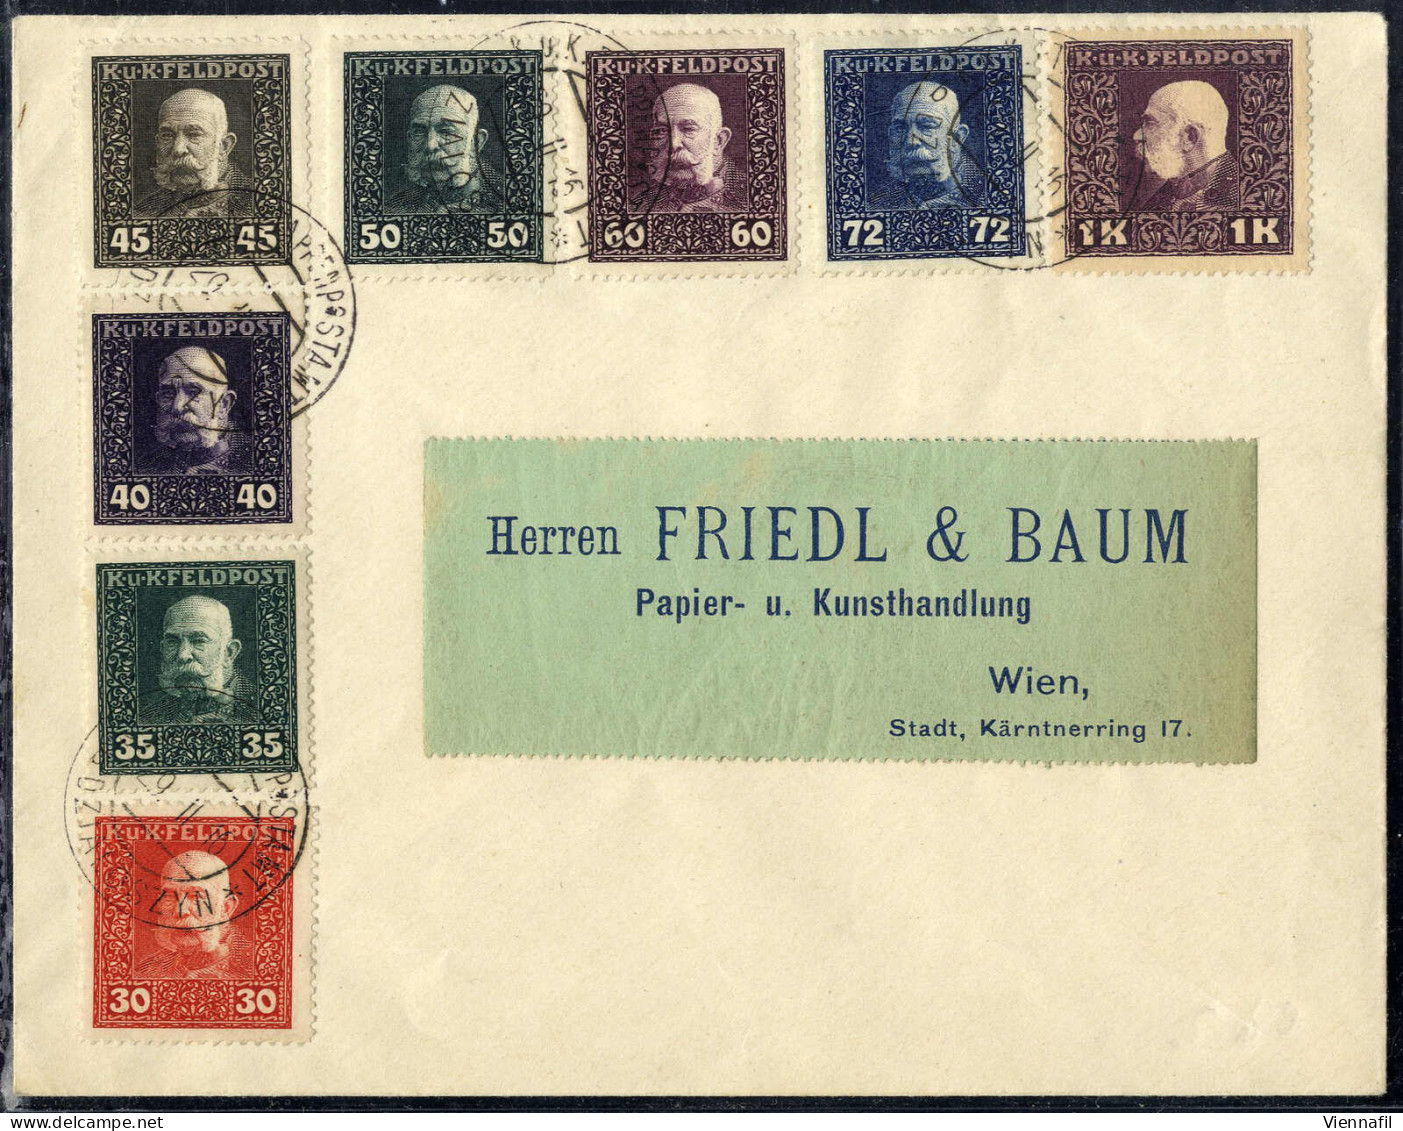 cover FELDPOST 1914/18: Lot von 22 Poststücken, darunter Rekobriefe nach Belgrad und Wien (dieser mit Einzelfrankatur 2 